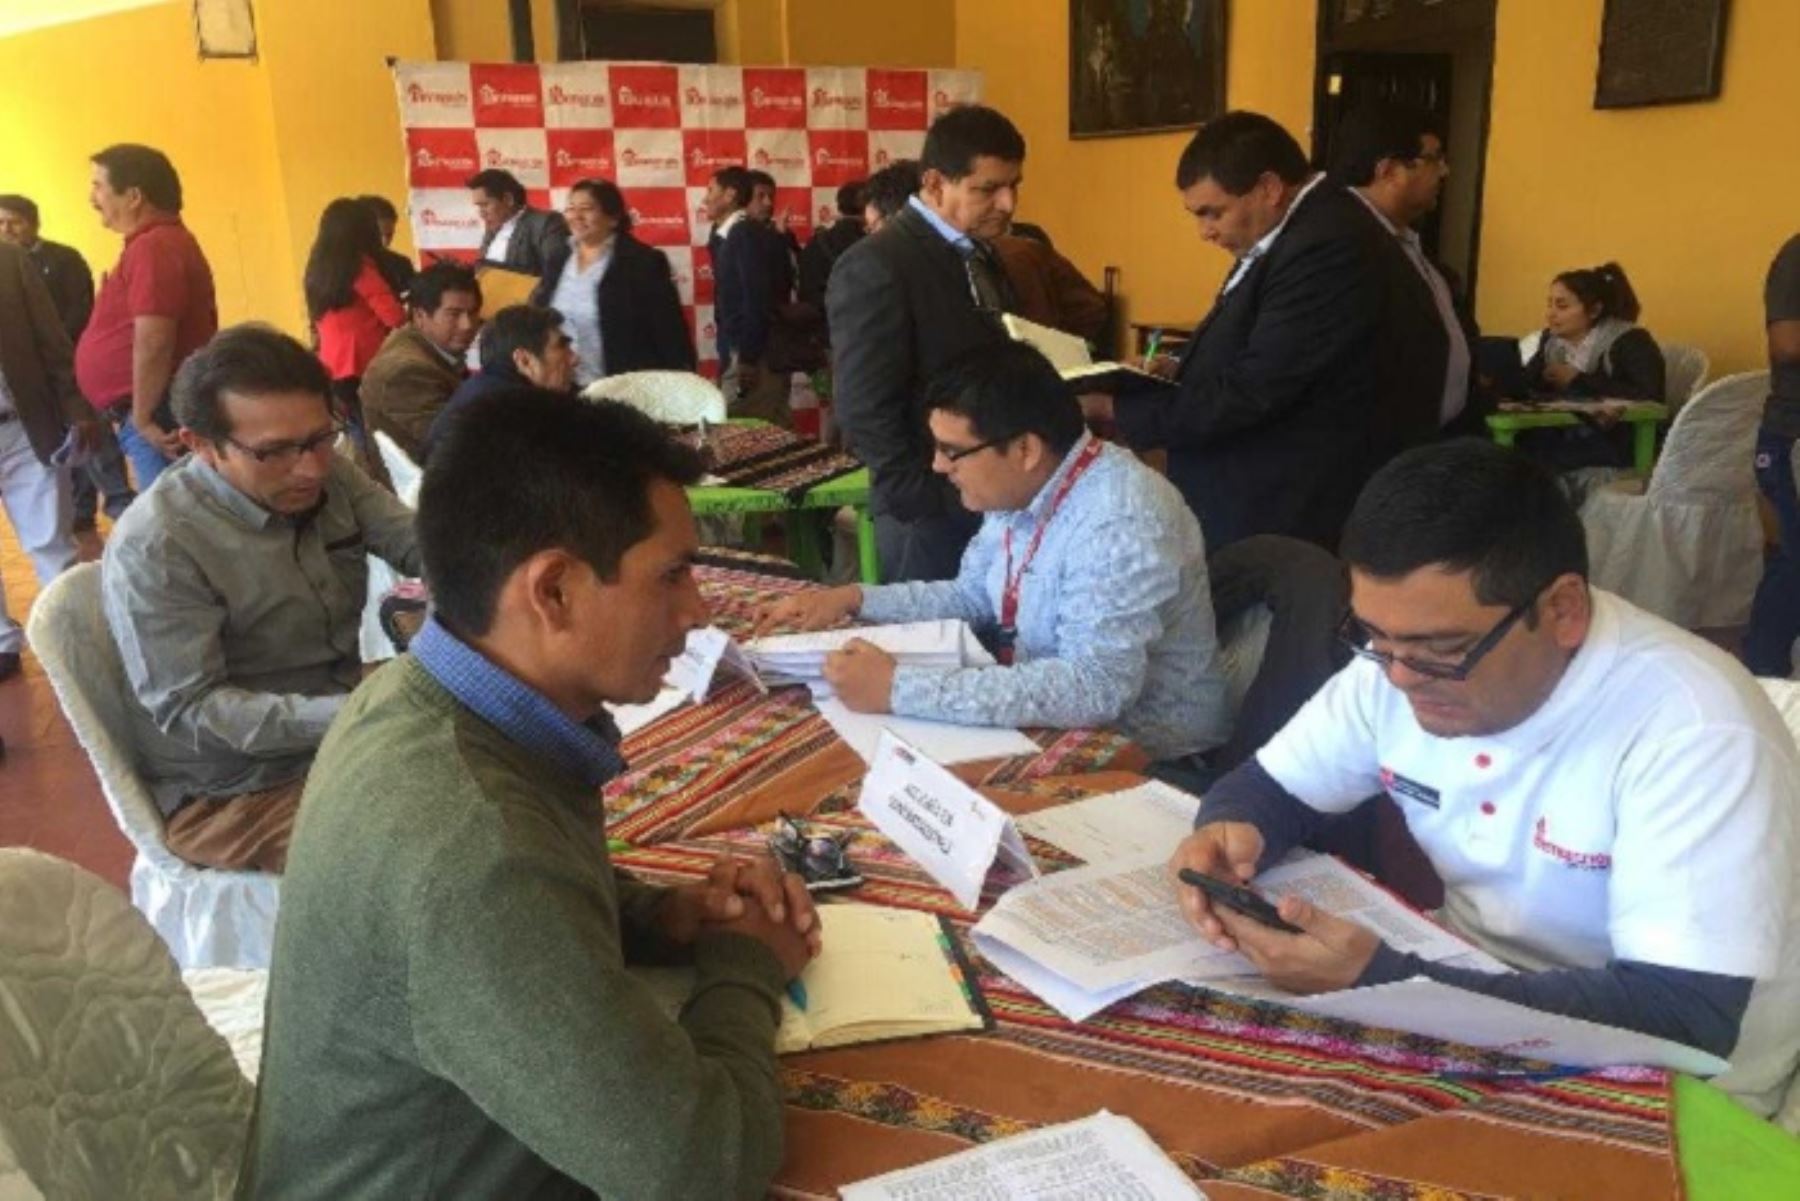 El Gobierno Regional de Ayacucho y alrededor de treinta alcaldes provinciales y distritales ratificaron hoy su compromiso para trabajar y hacer realidad las obras de reconstrucción en esta región.